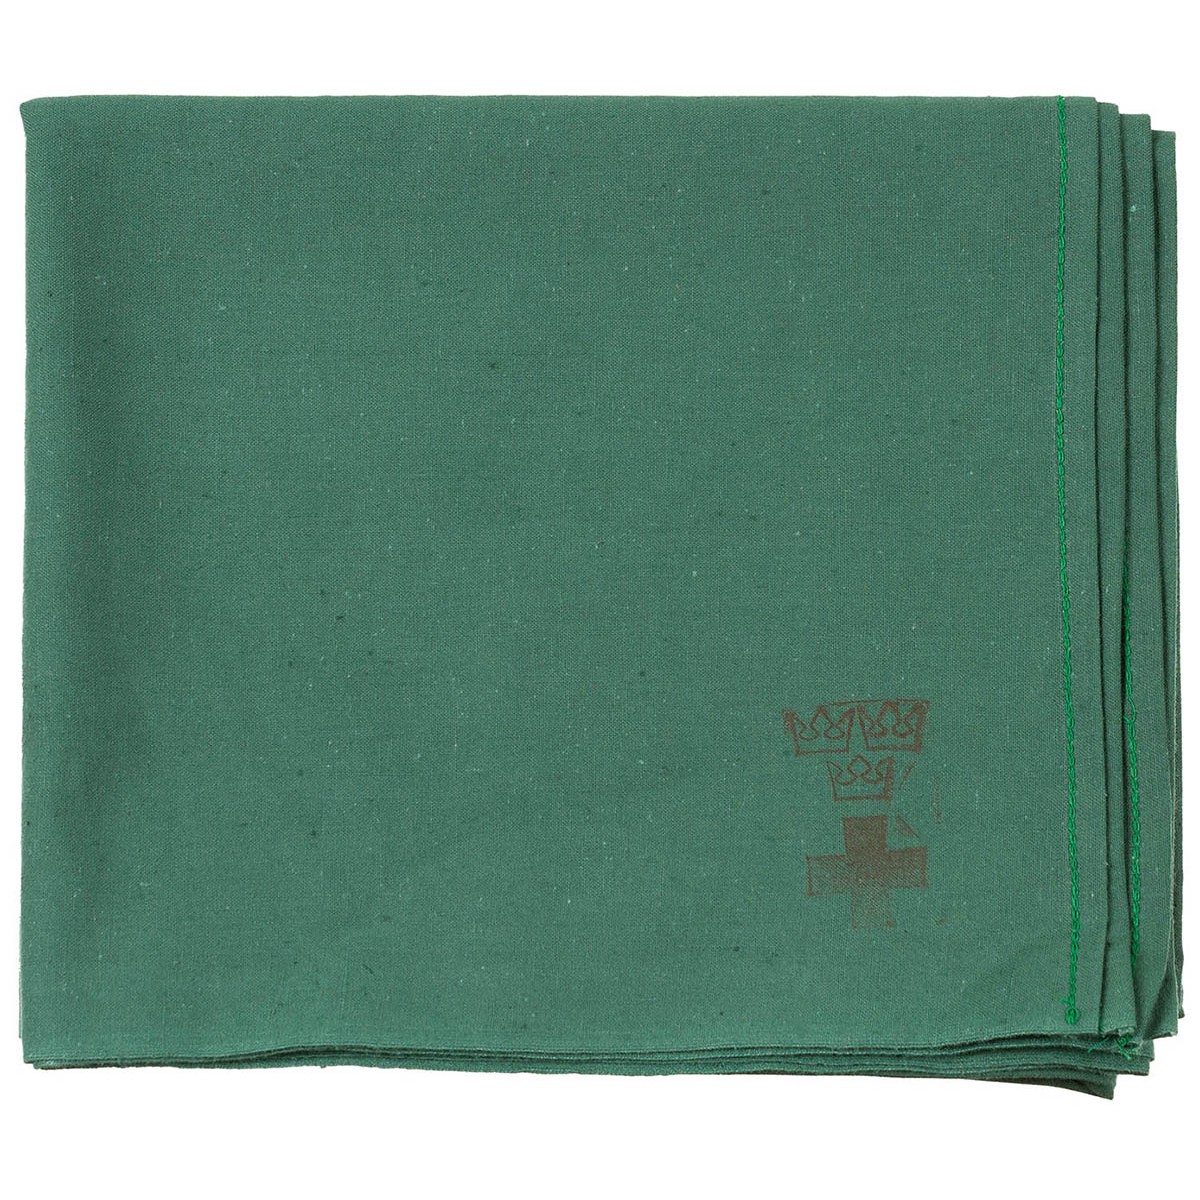 Schwed. OP-Tuch,  Baumwolle, 90 x 80 cm,  grün,  neuw. (10 Stück)